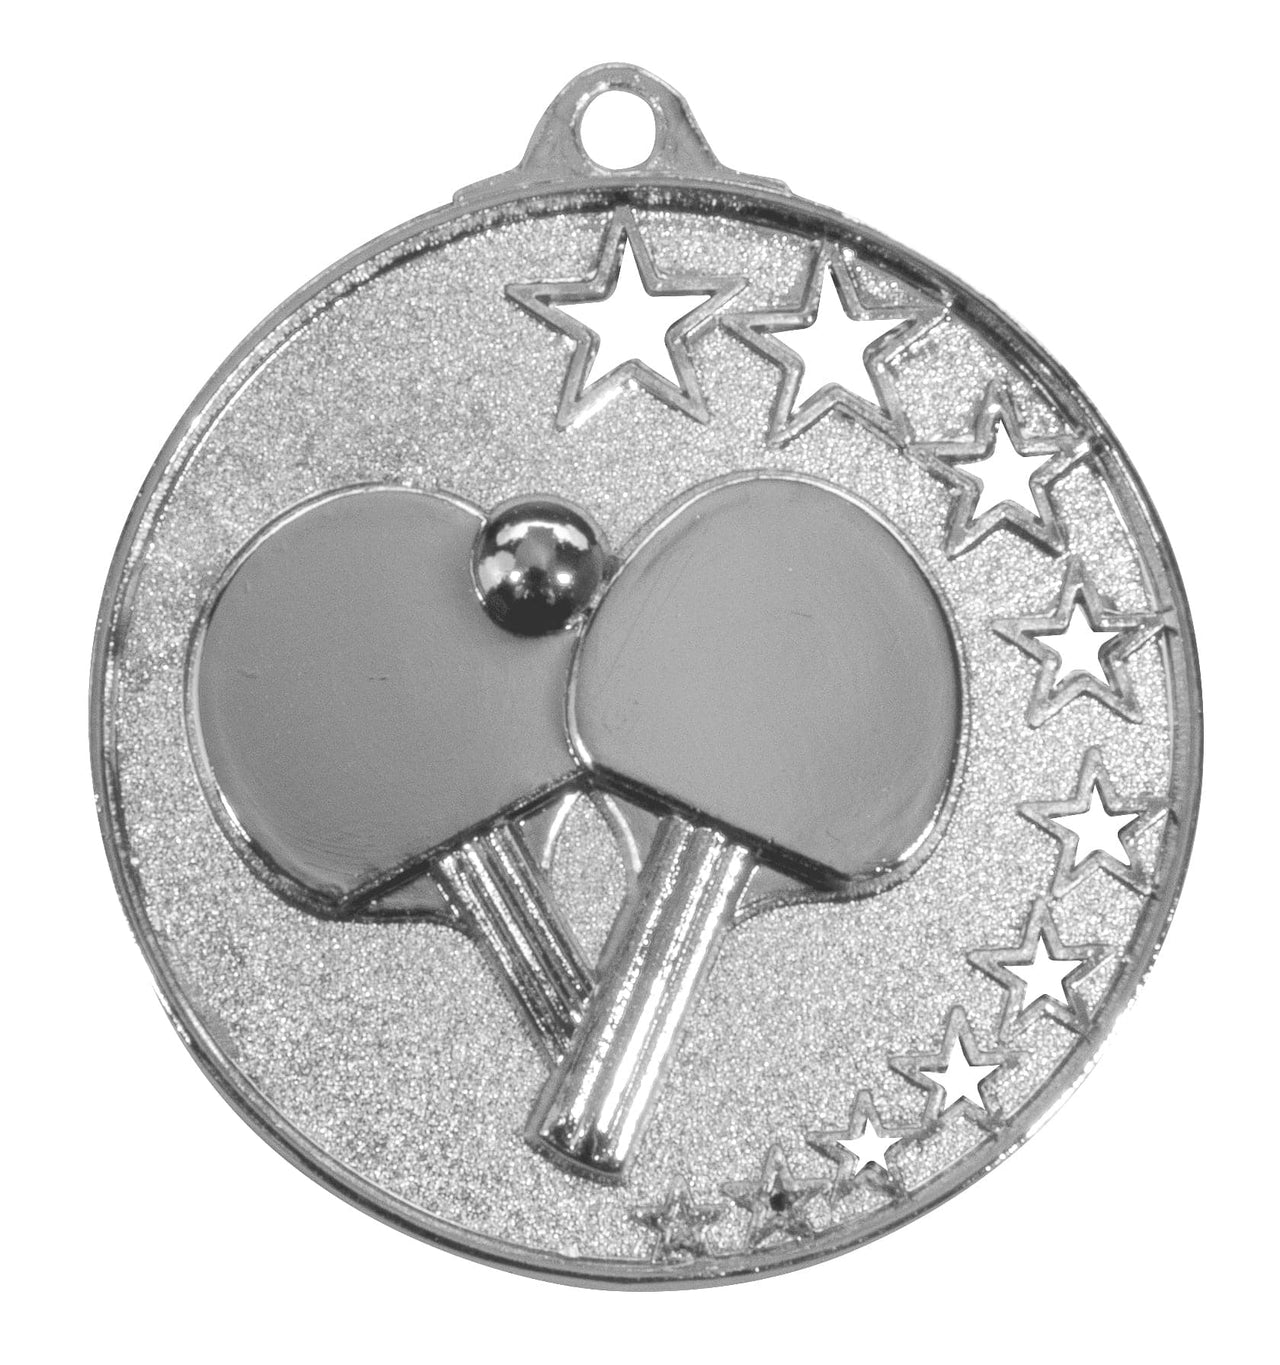 Silberne Tischtennis-Medaille „Tischtennis Medaillen Freiburg 50 mm PK79317“ von POMEKI mit Schläger- und Ballmotiv und Sternverzierungen.